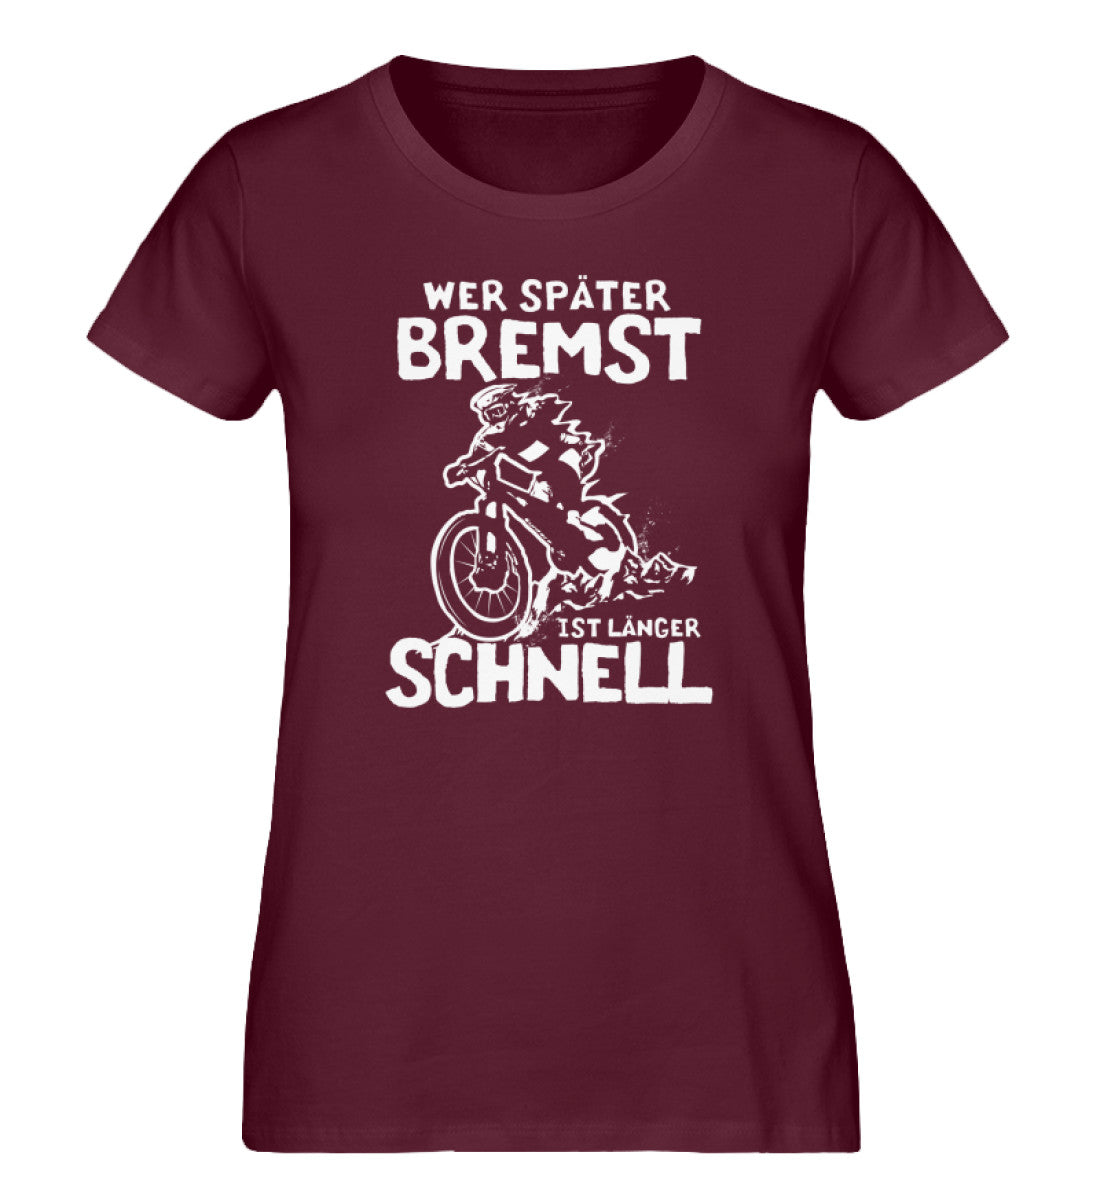 Wer später bremst ist länger schnell - Damen Organic T-Shirt mountainbike Weinrot